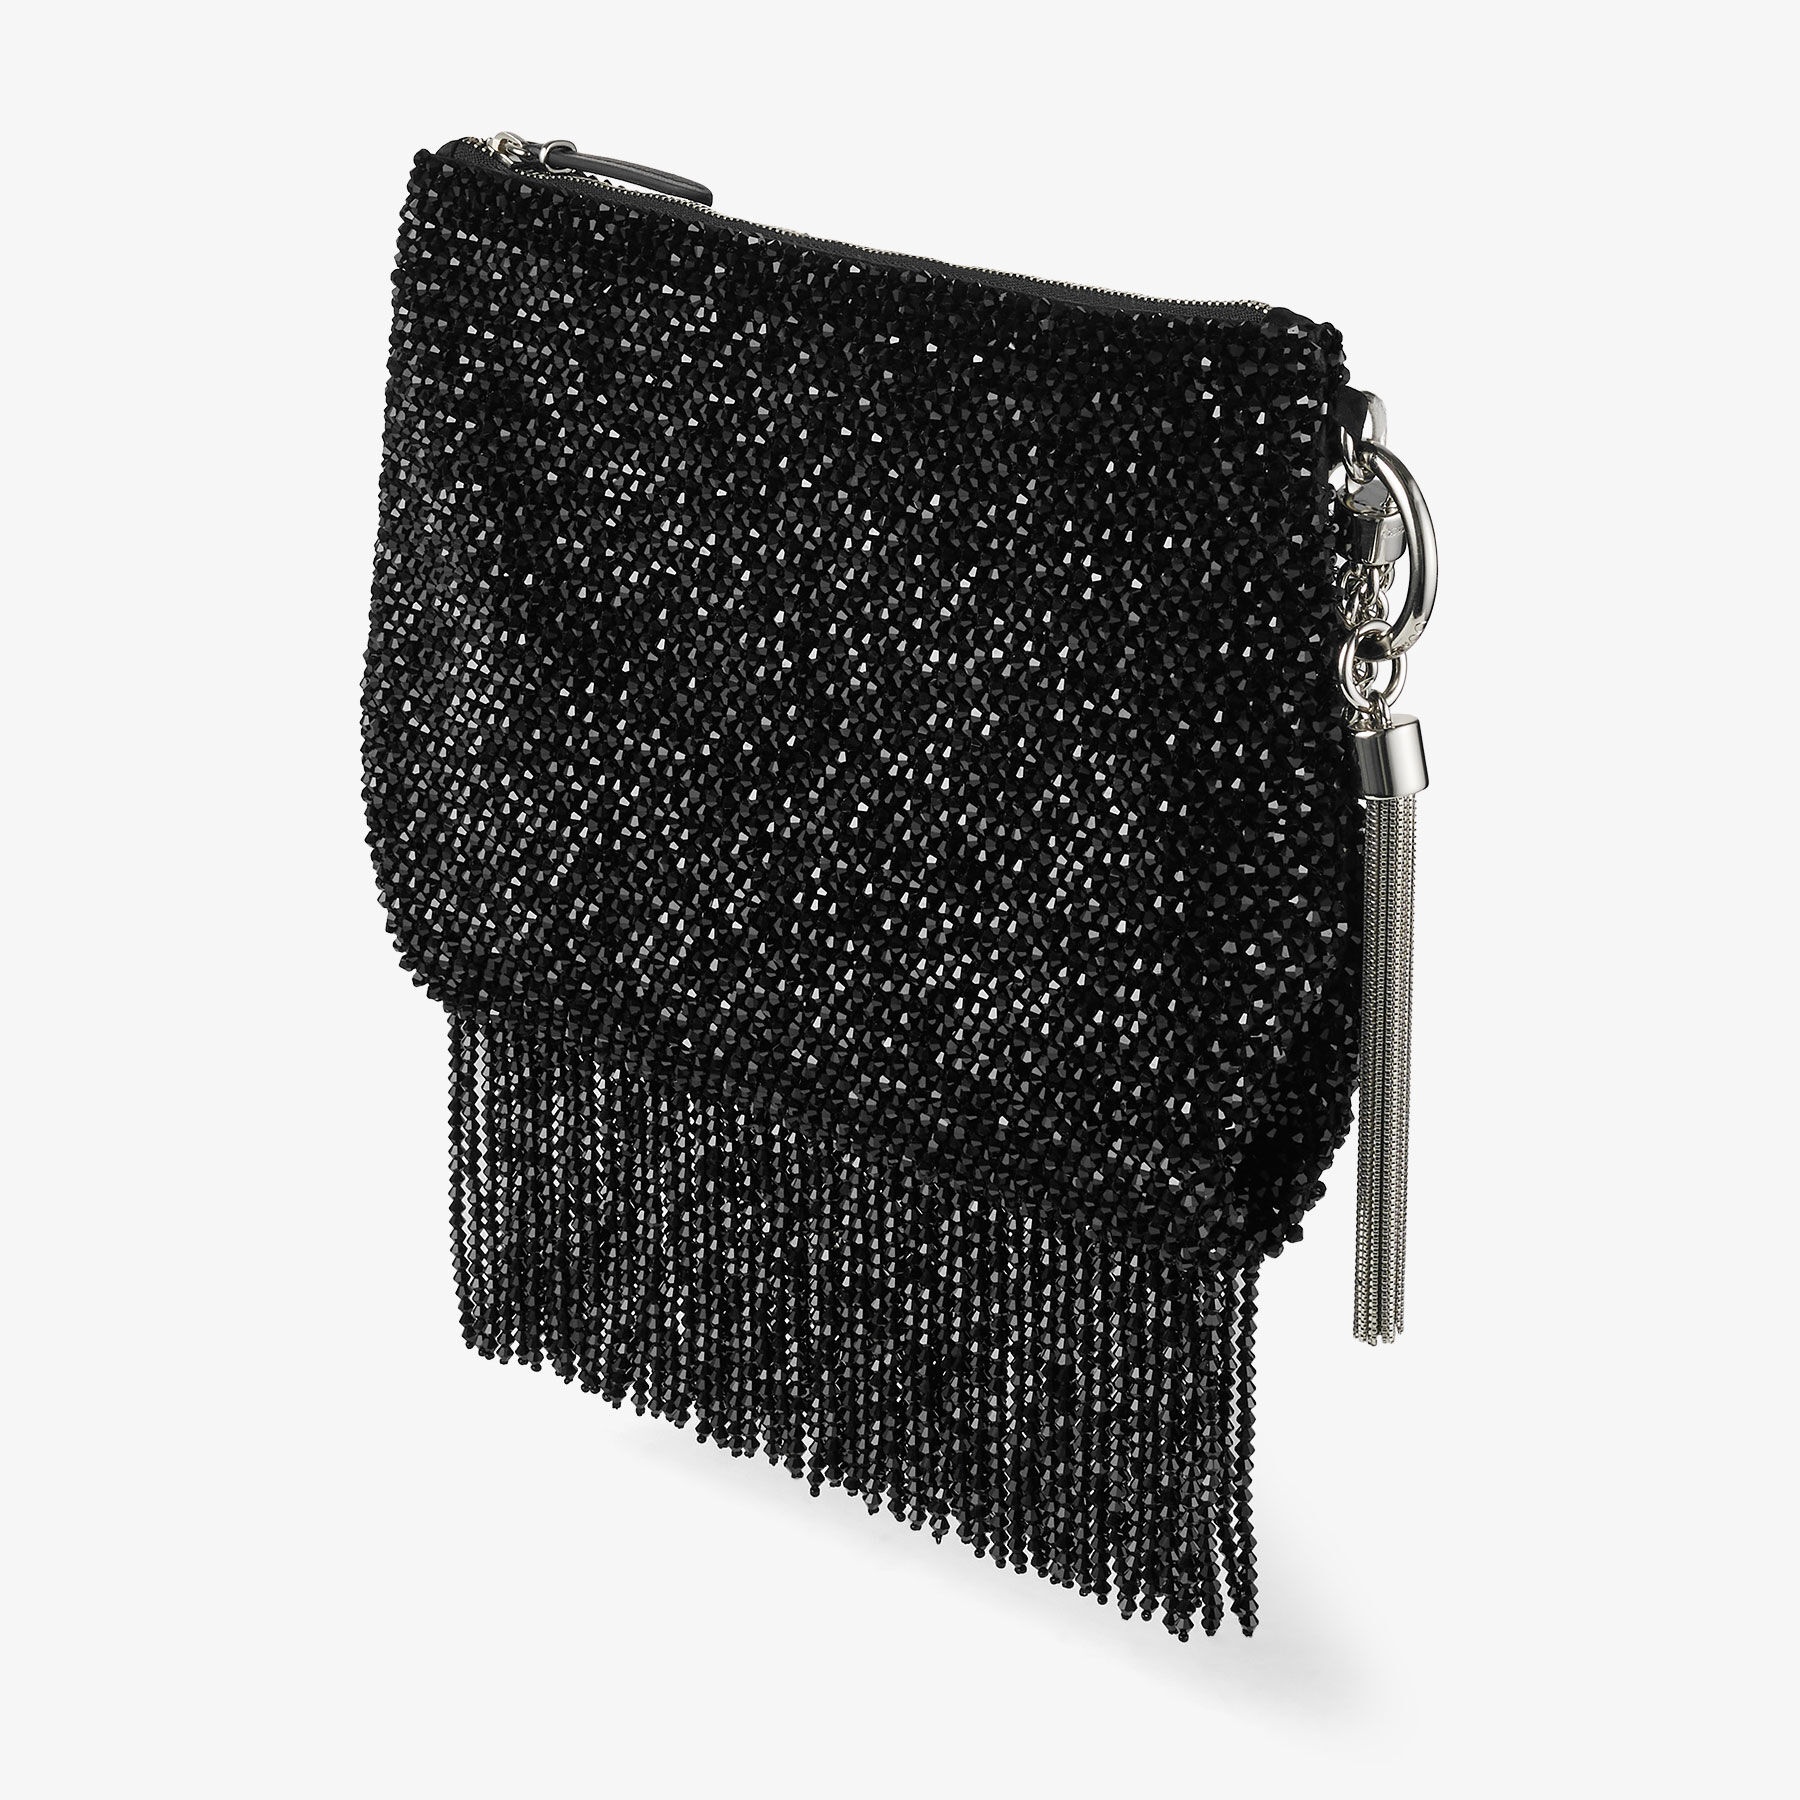 Callie  Shoulder
Black Satin Shoulder Bag with Crystal Fringe - 2